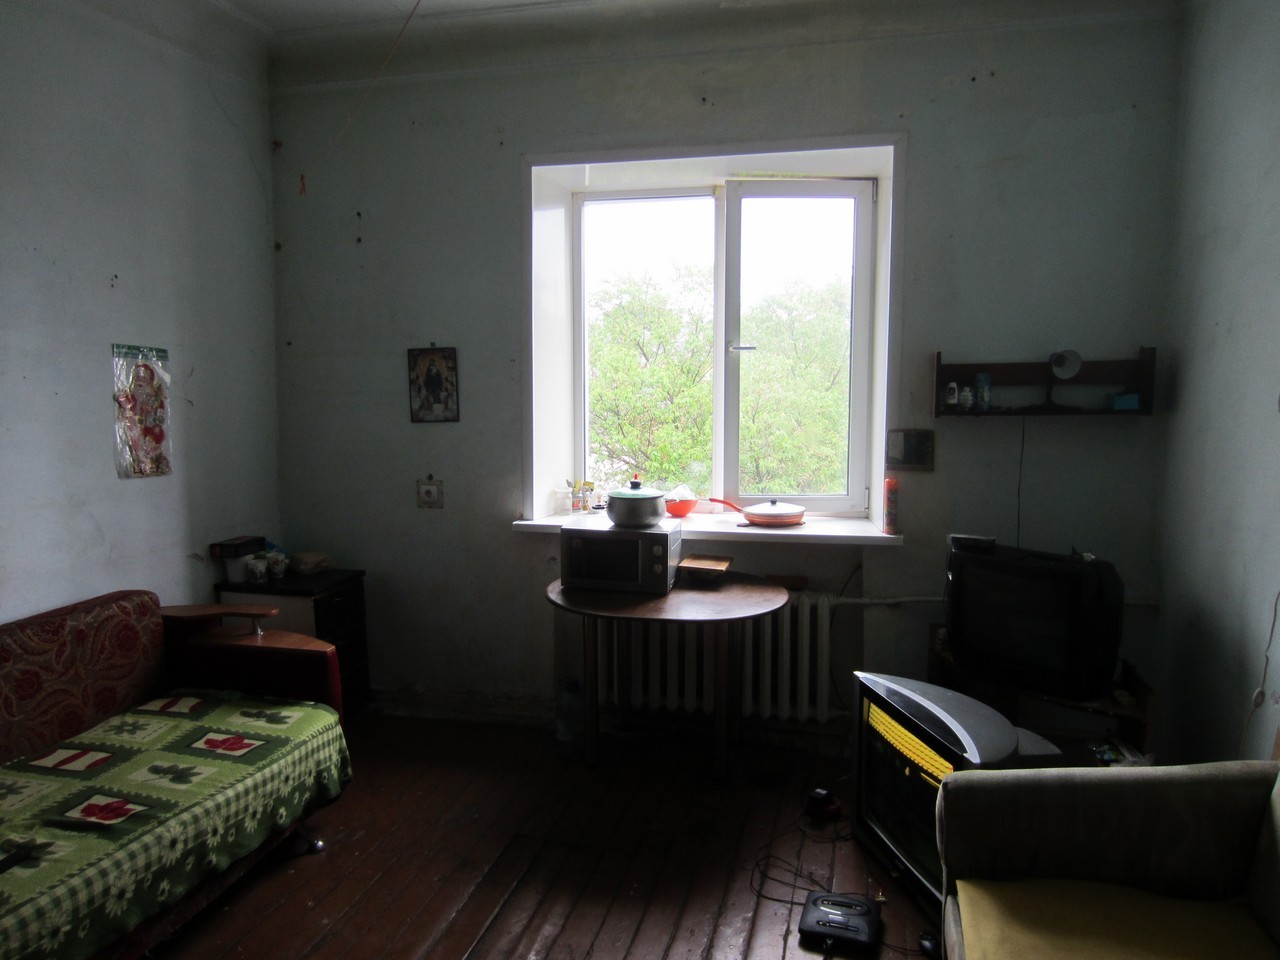 Купить комнату в комсомольске. Хетагуровская 18 Комсомольск-на-Амуре.